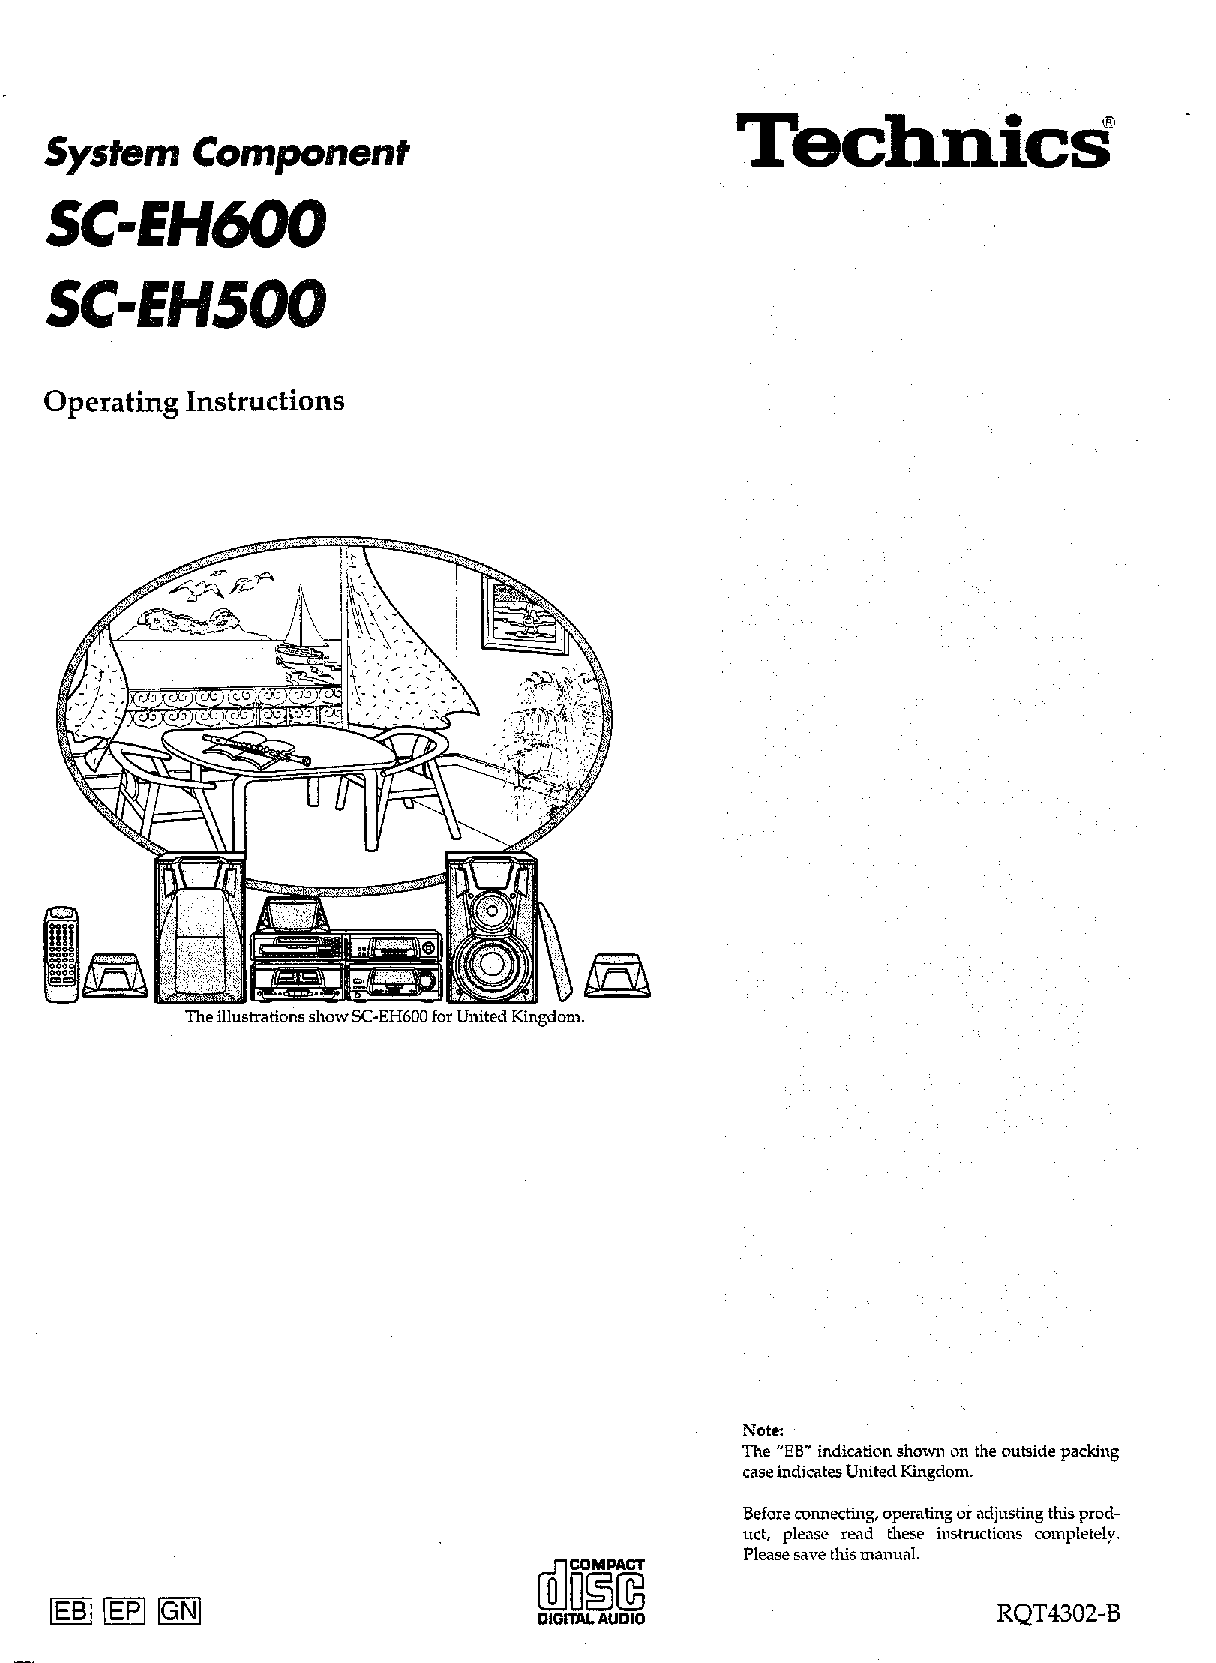 Technics SC-EH500, SC-EH600 User Manual